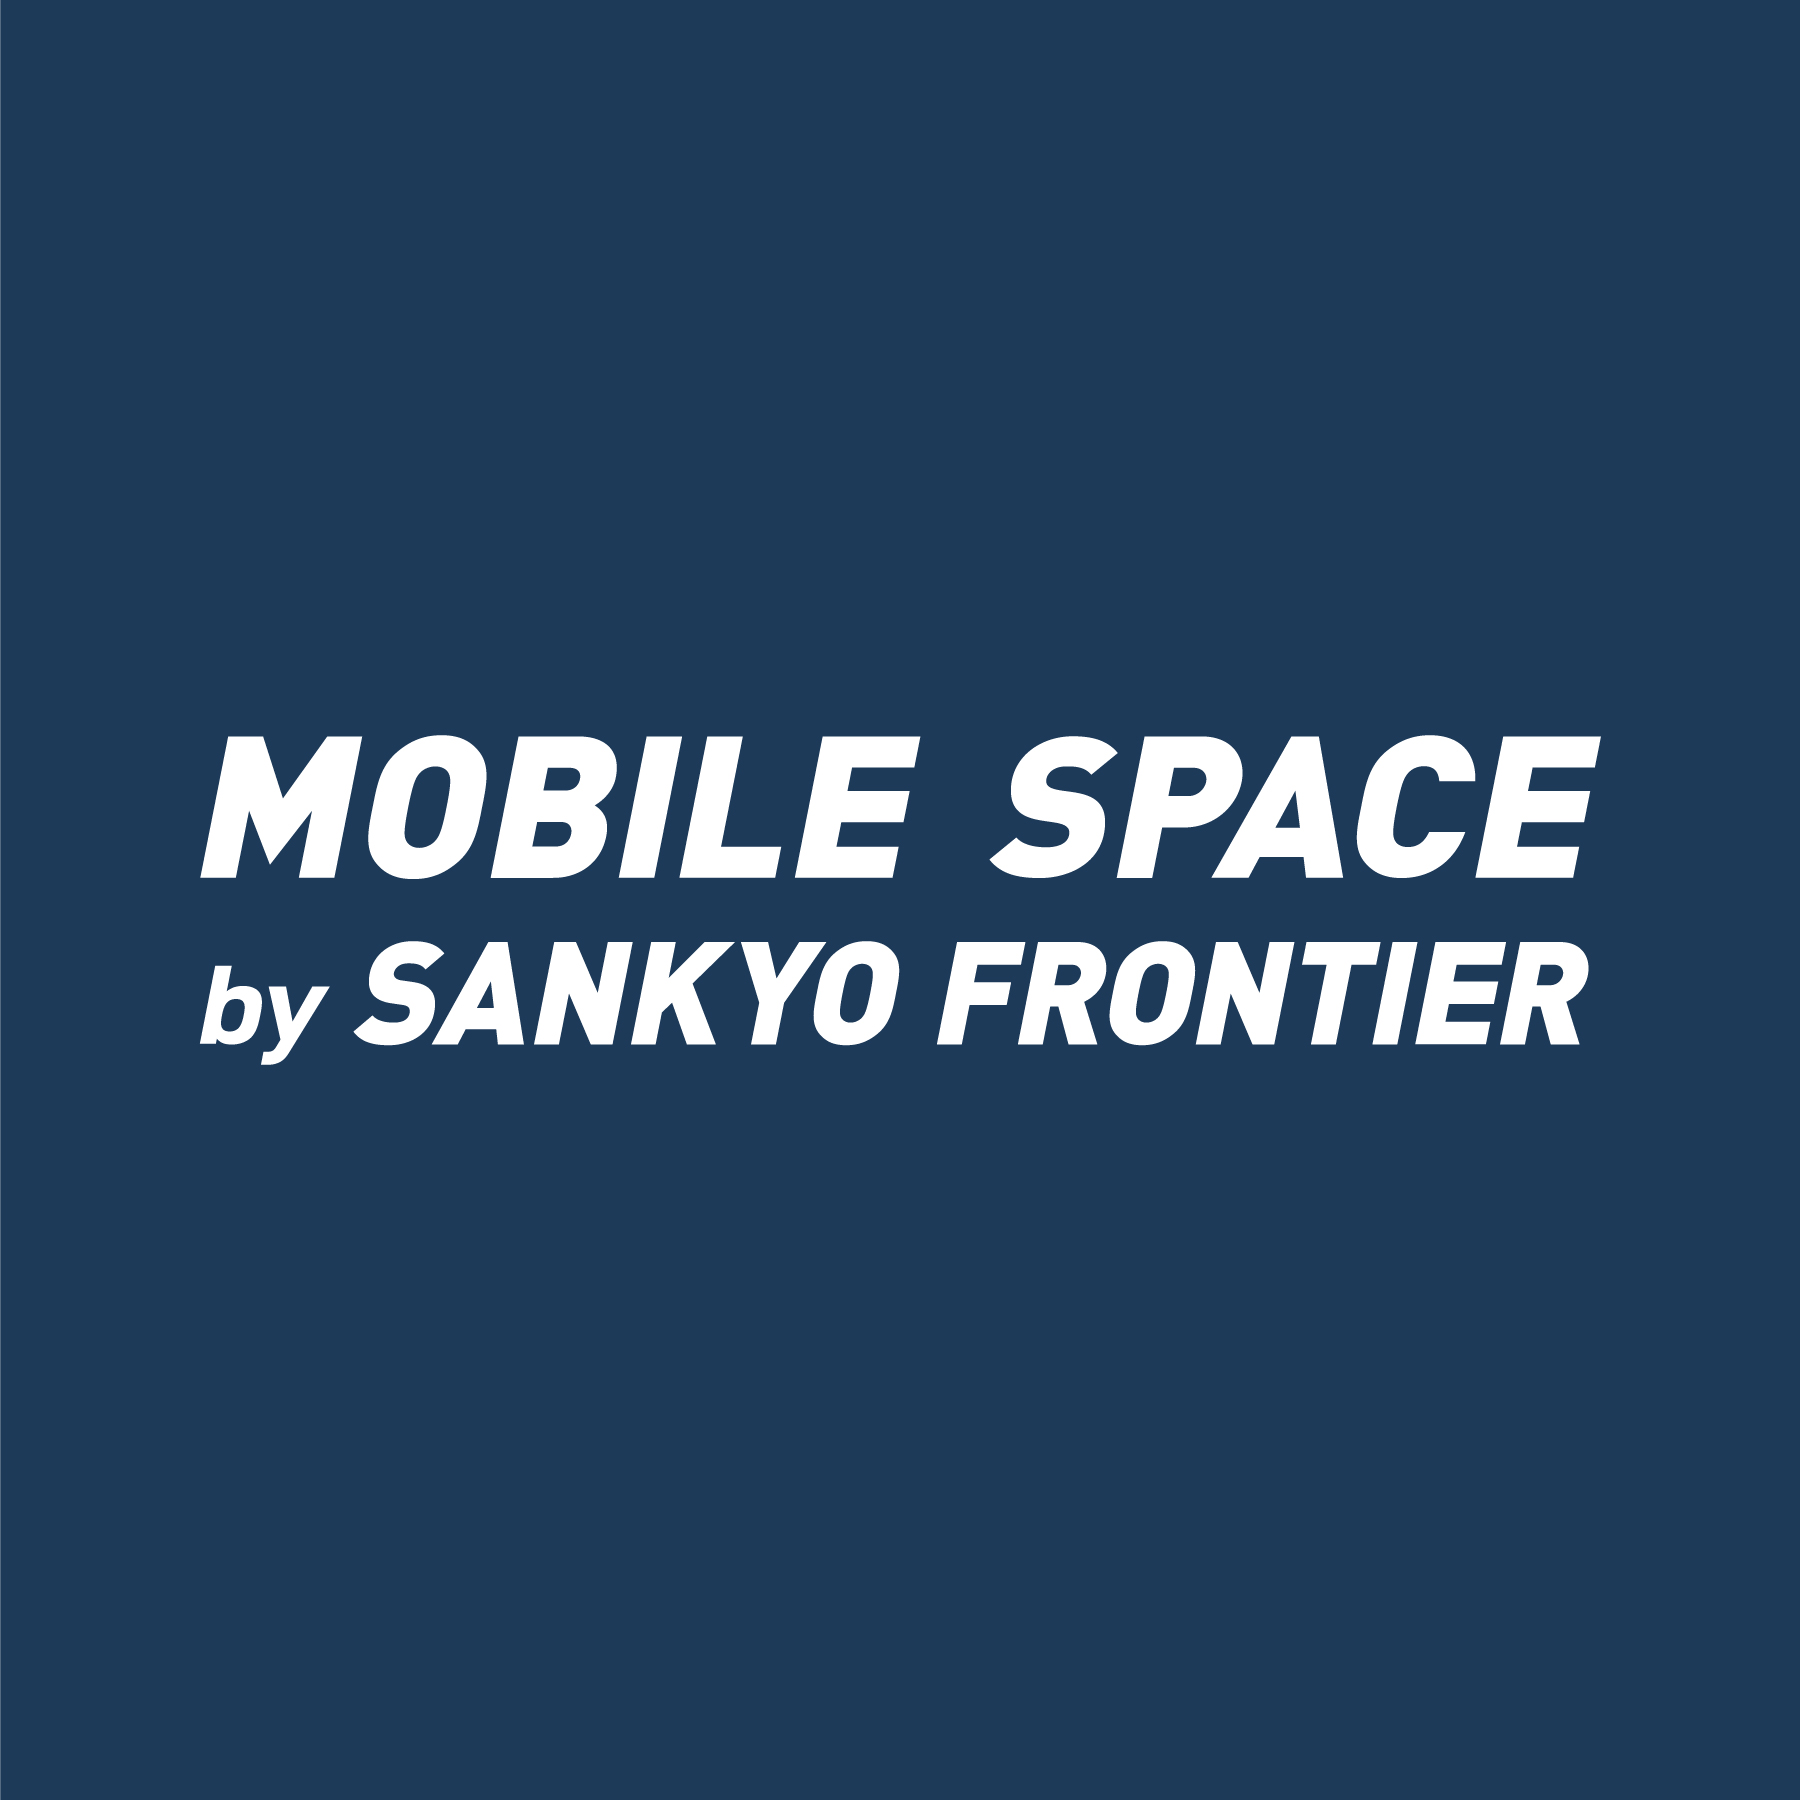 Sankyo Frontier Technologies Myanmar